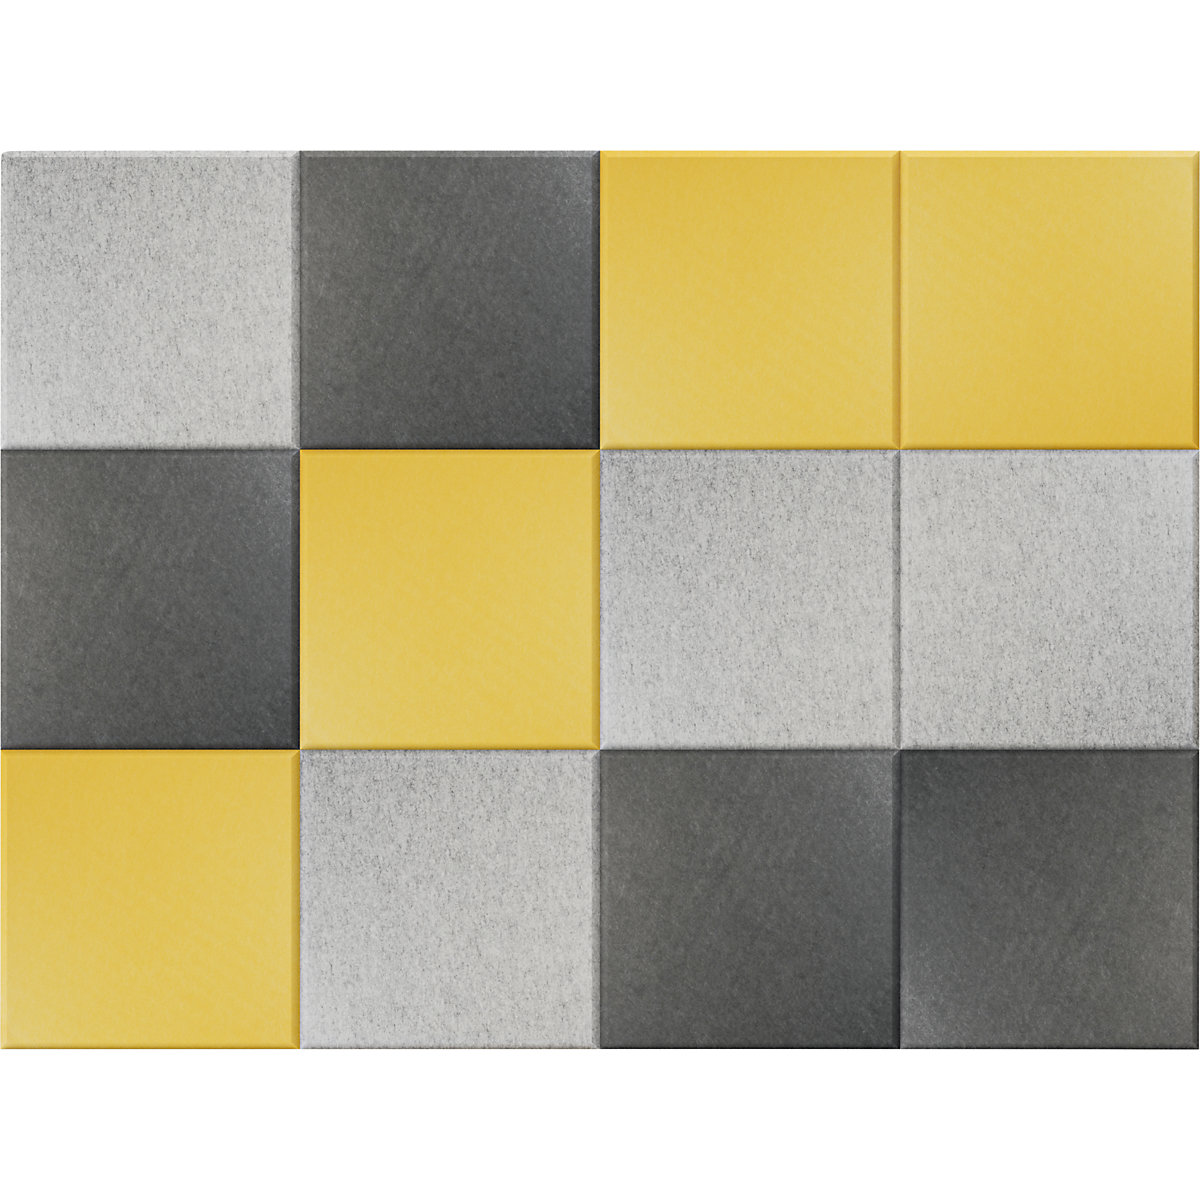 Carreau mural acoustique – eurokraft basic, h x l 300 x 300 mm, lot de 12, 4 de chaque: jaune, gris clair, gris foncé-5